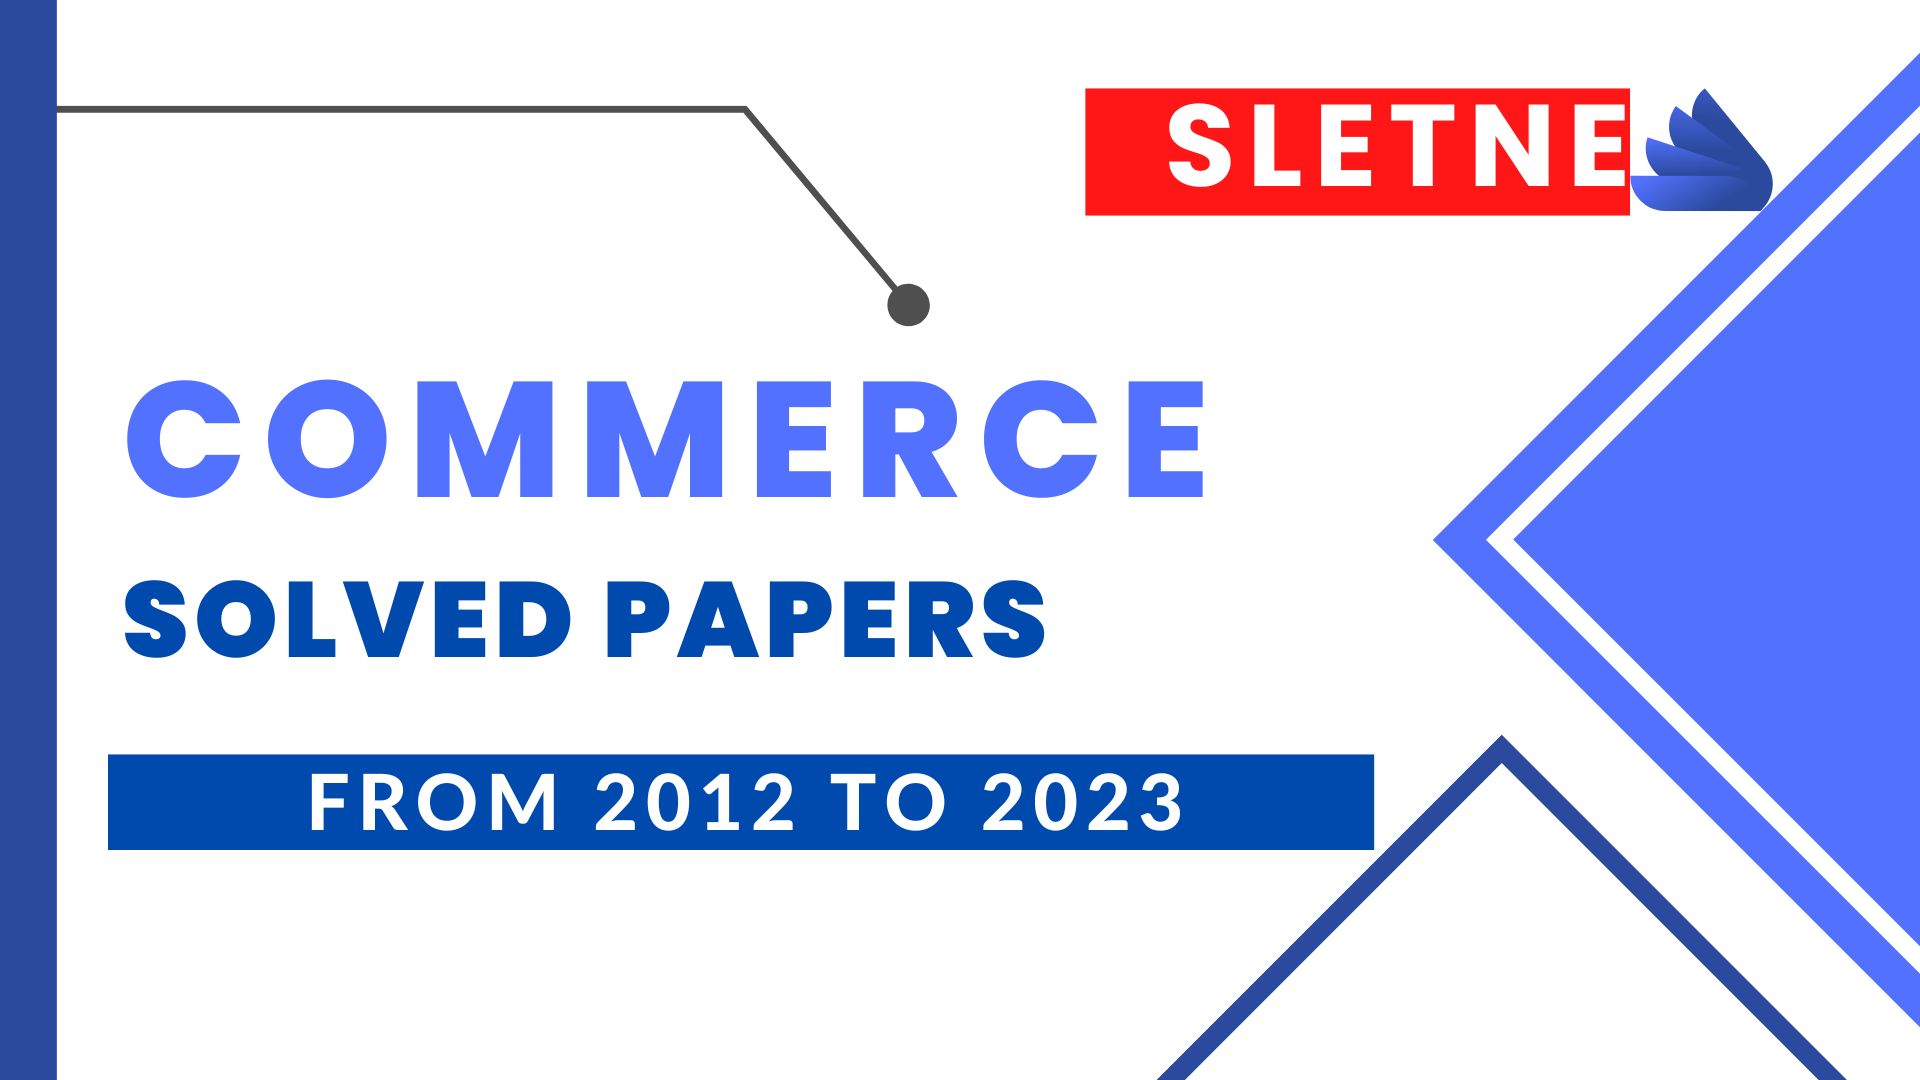 SLET NE Commerce Solved Paper 2021